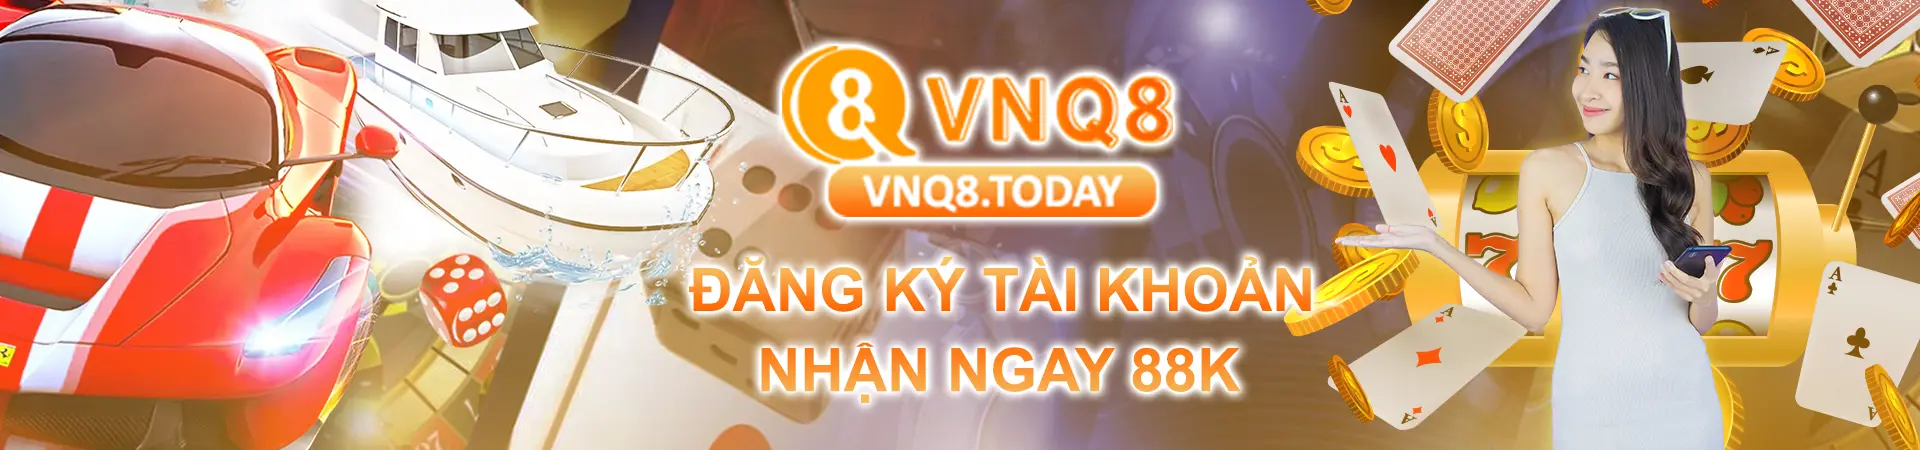 Banner VNQ8